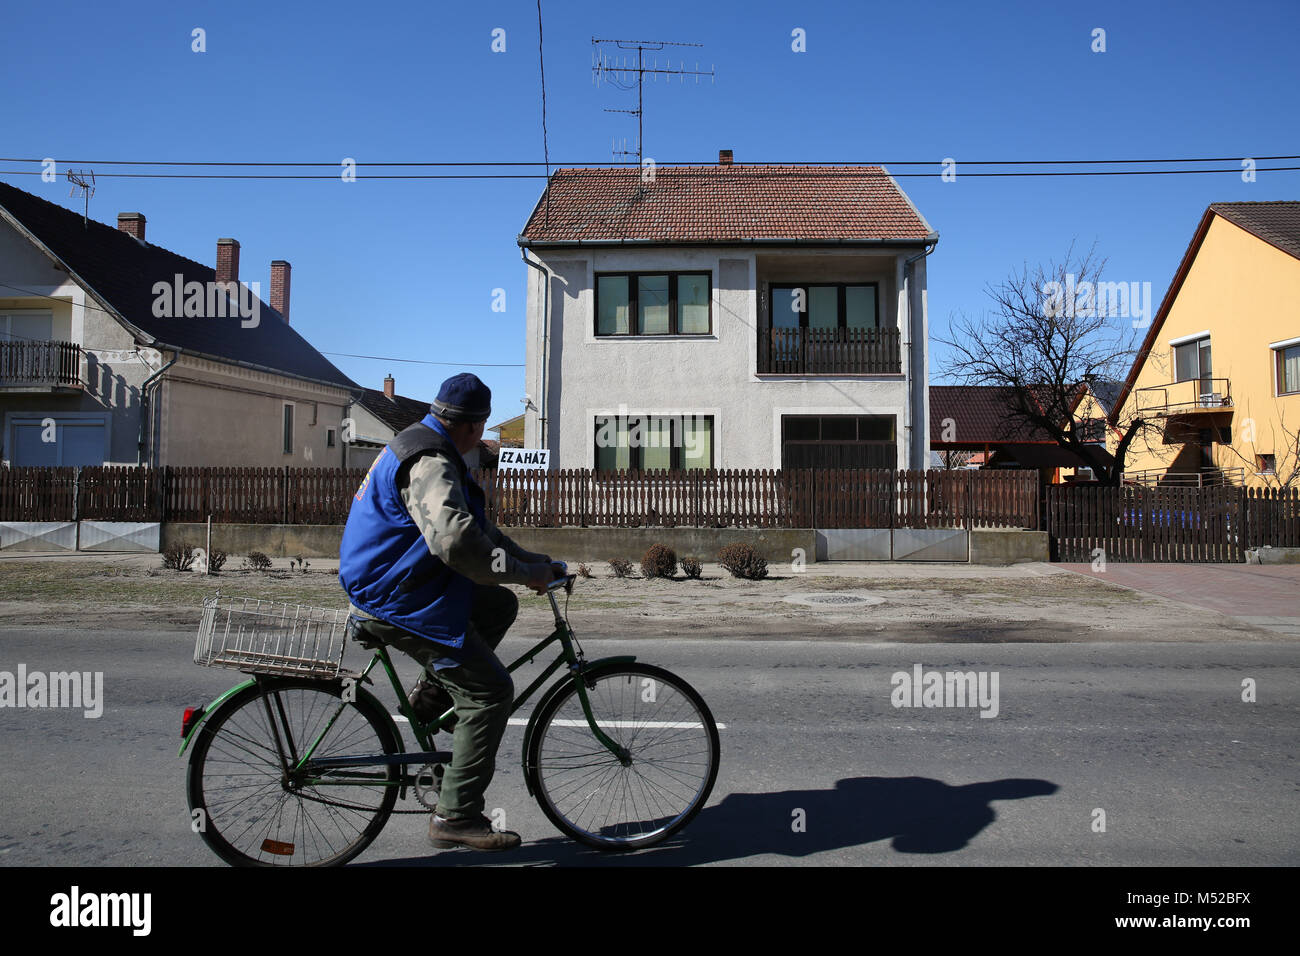 Ein Mann Zyklen hinter einem Haus in Asotthalom, der ungarischen Stadt, deren weit rechts Bürgermeister kurz verboten "homosexuelle Propaganda" und der Ruf zum Gebet. Stockfoto